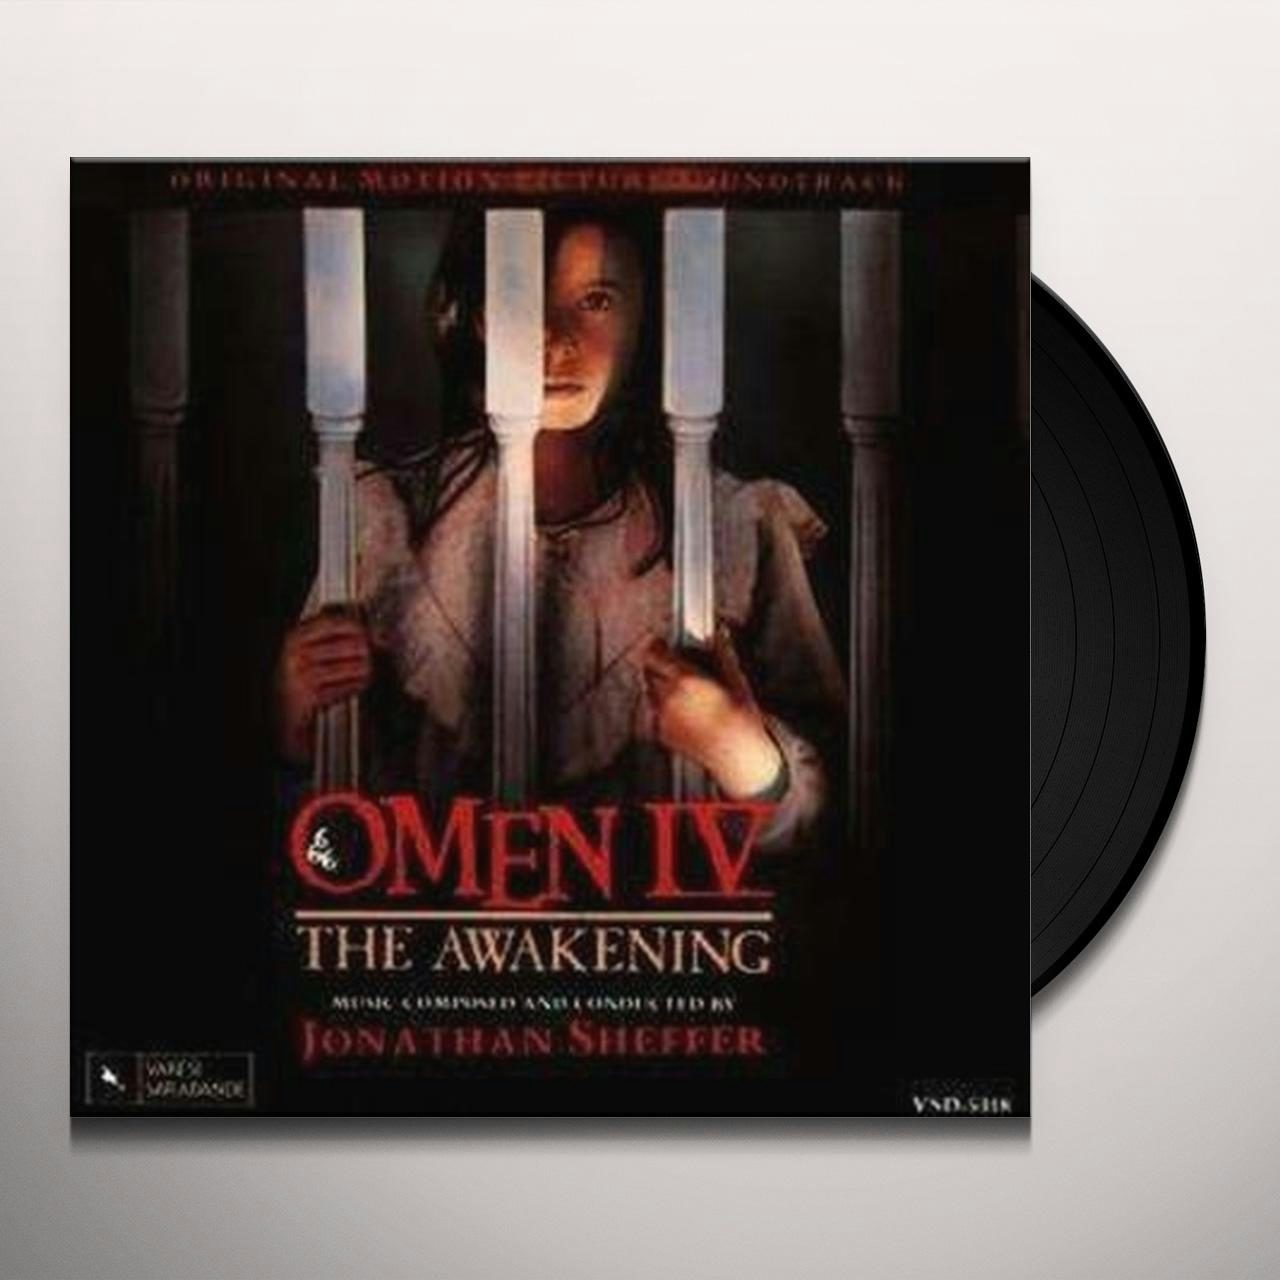 omen iv: the awakening